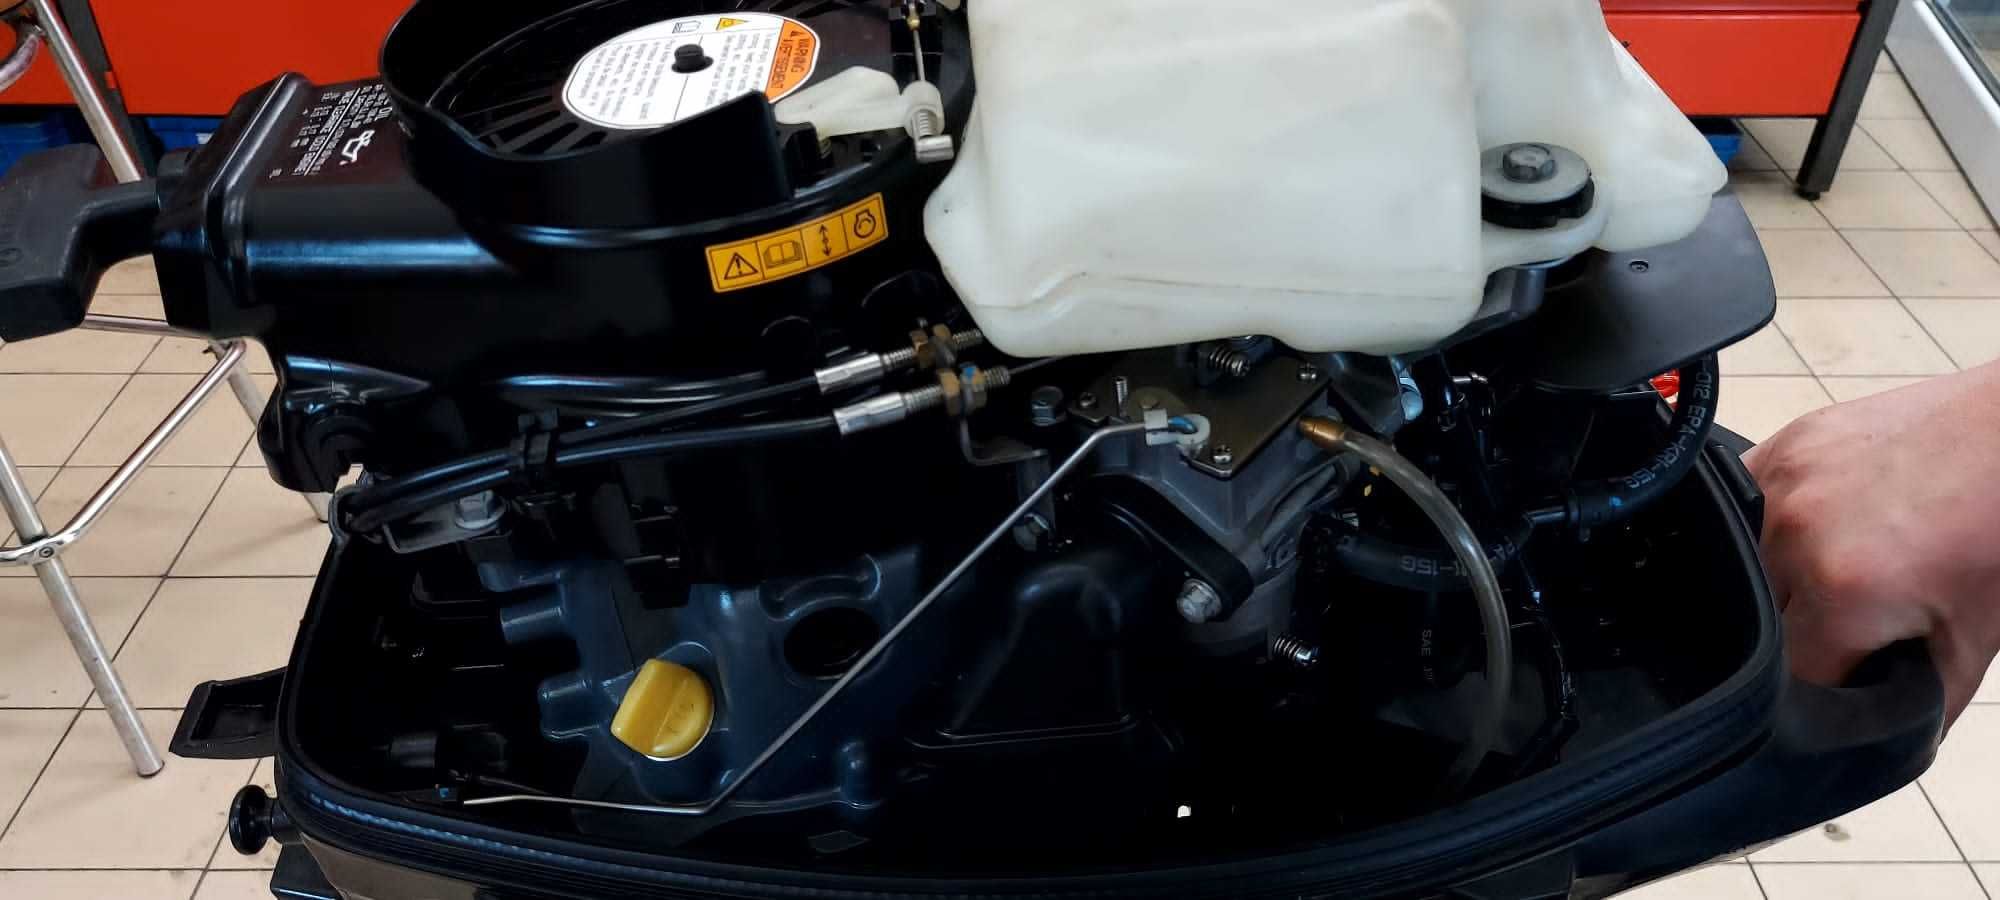 Silnik zaburtowy Suzuki-DF5,4-takt,rok 2017.stopa "S".Motorówka.